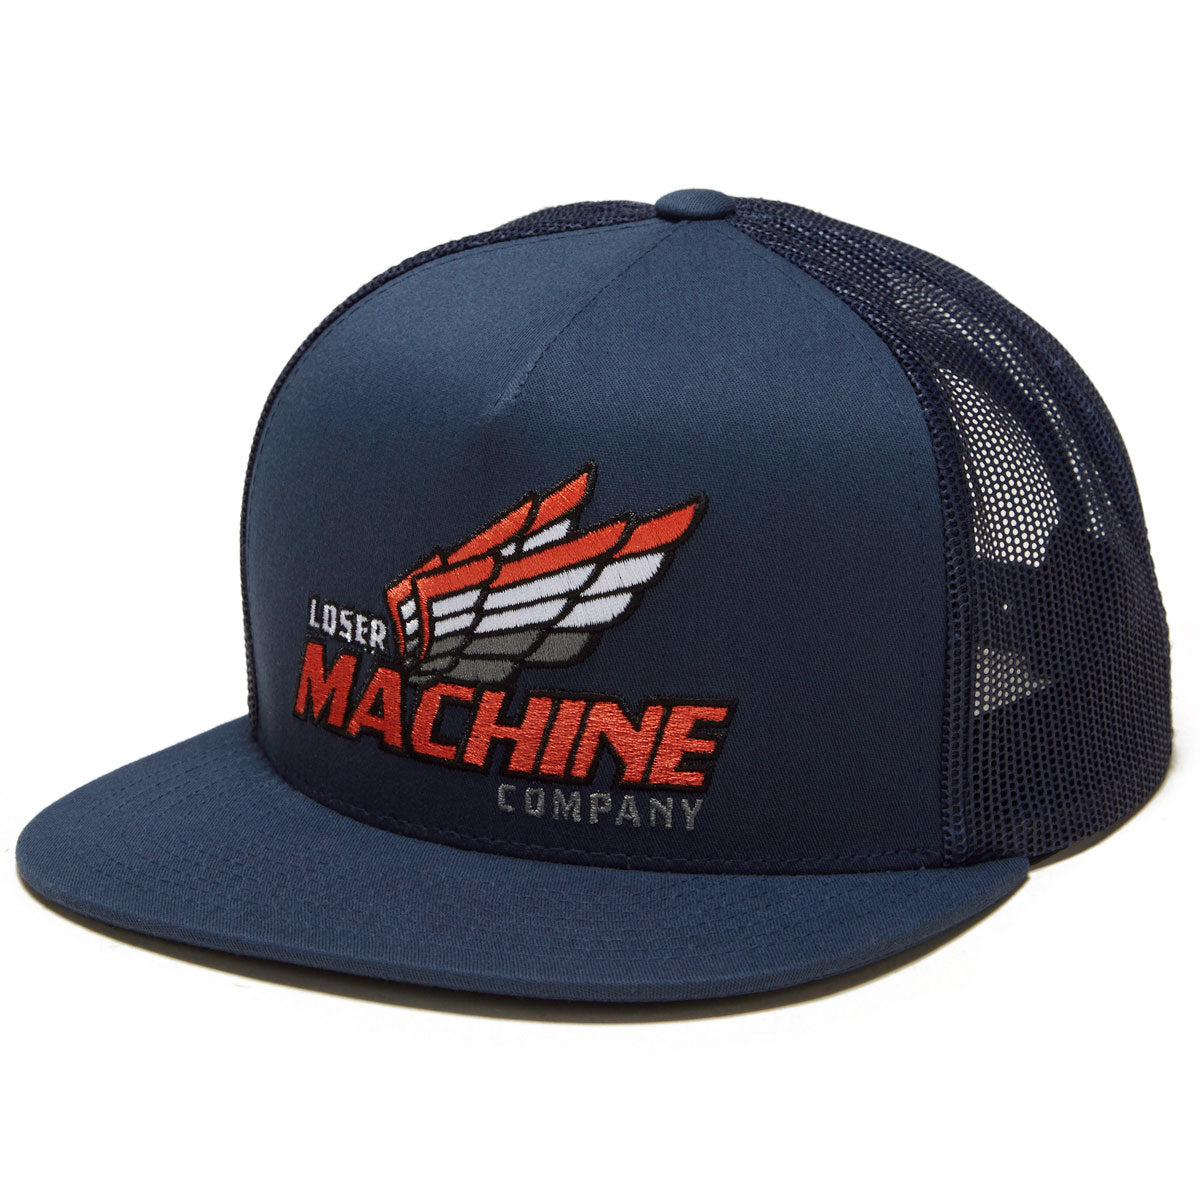 Loser Machine Wildomar Hat - Navy image 1